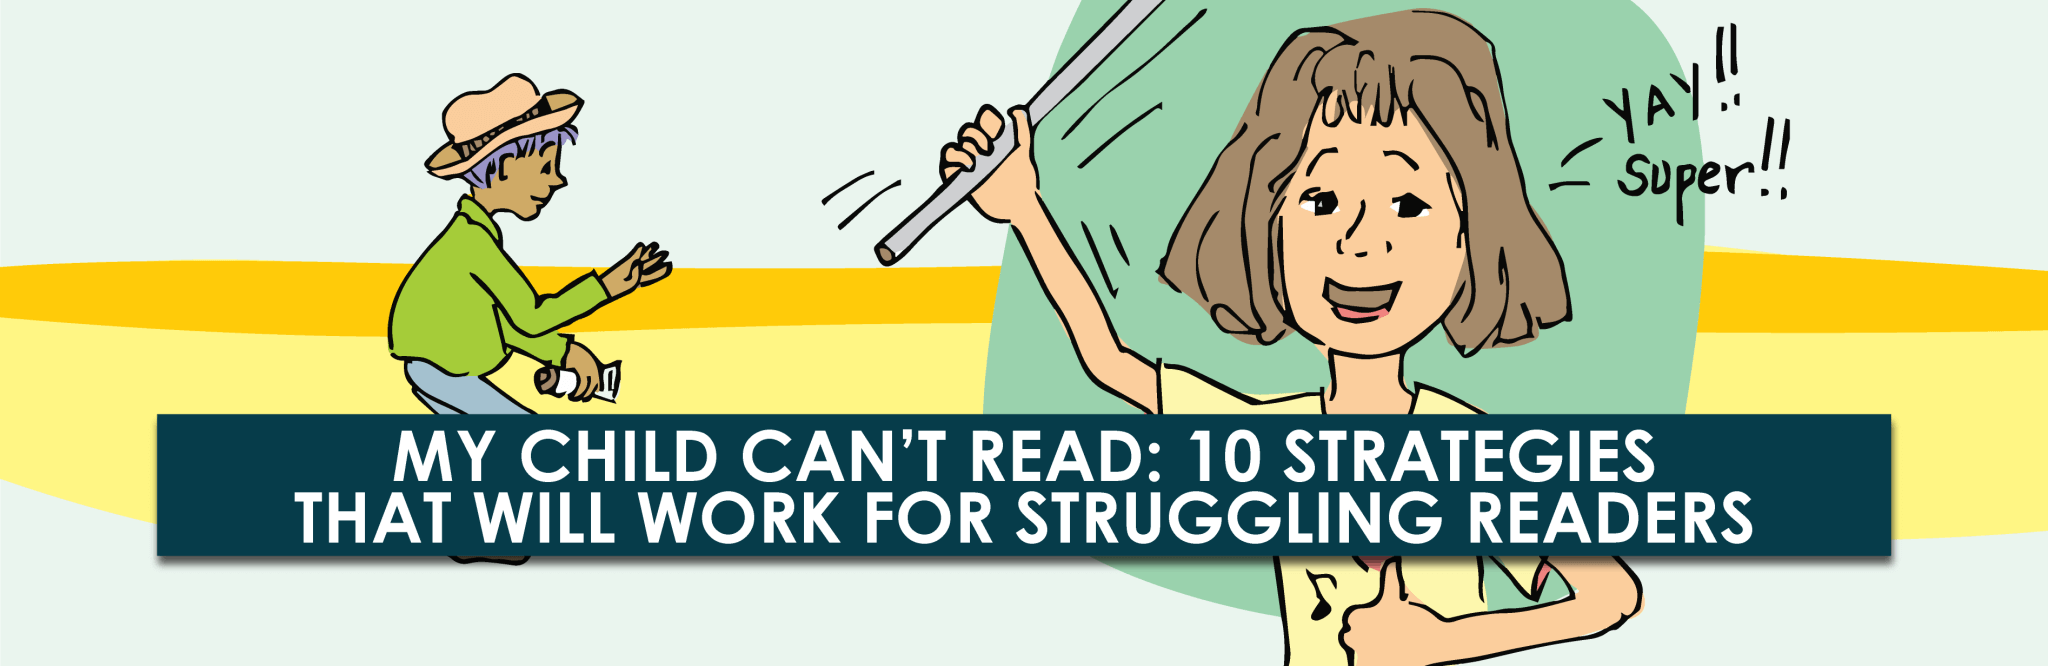 Mi hijo no puede leer: 10 estrategias que funcionarán para lectores con dificultades